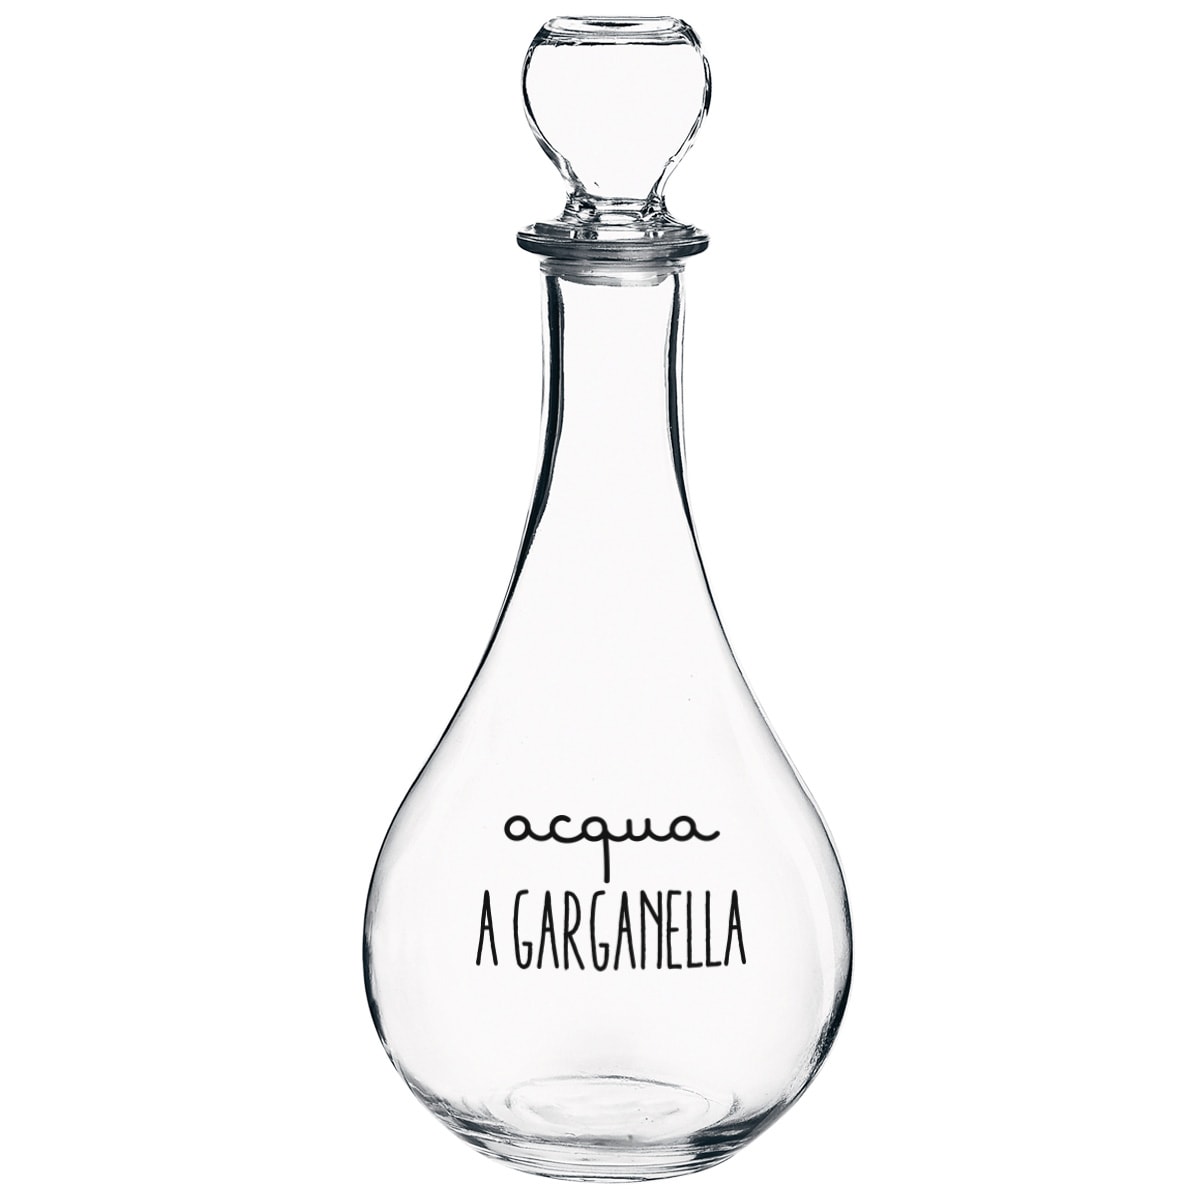 Bottiglia da tavola in vetro con scritta Acqua A Garganella